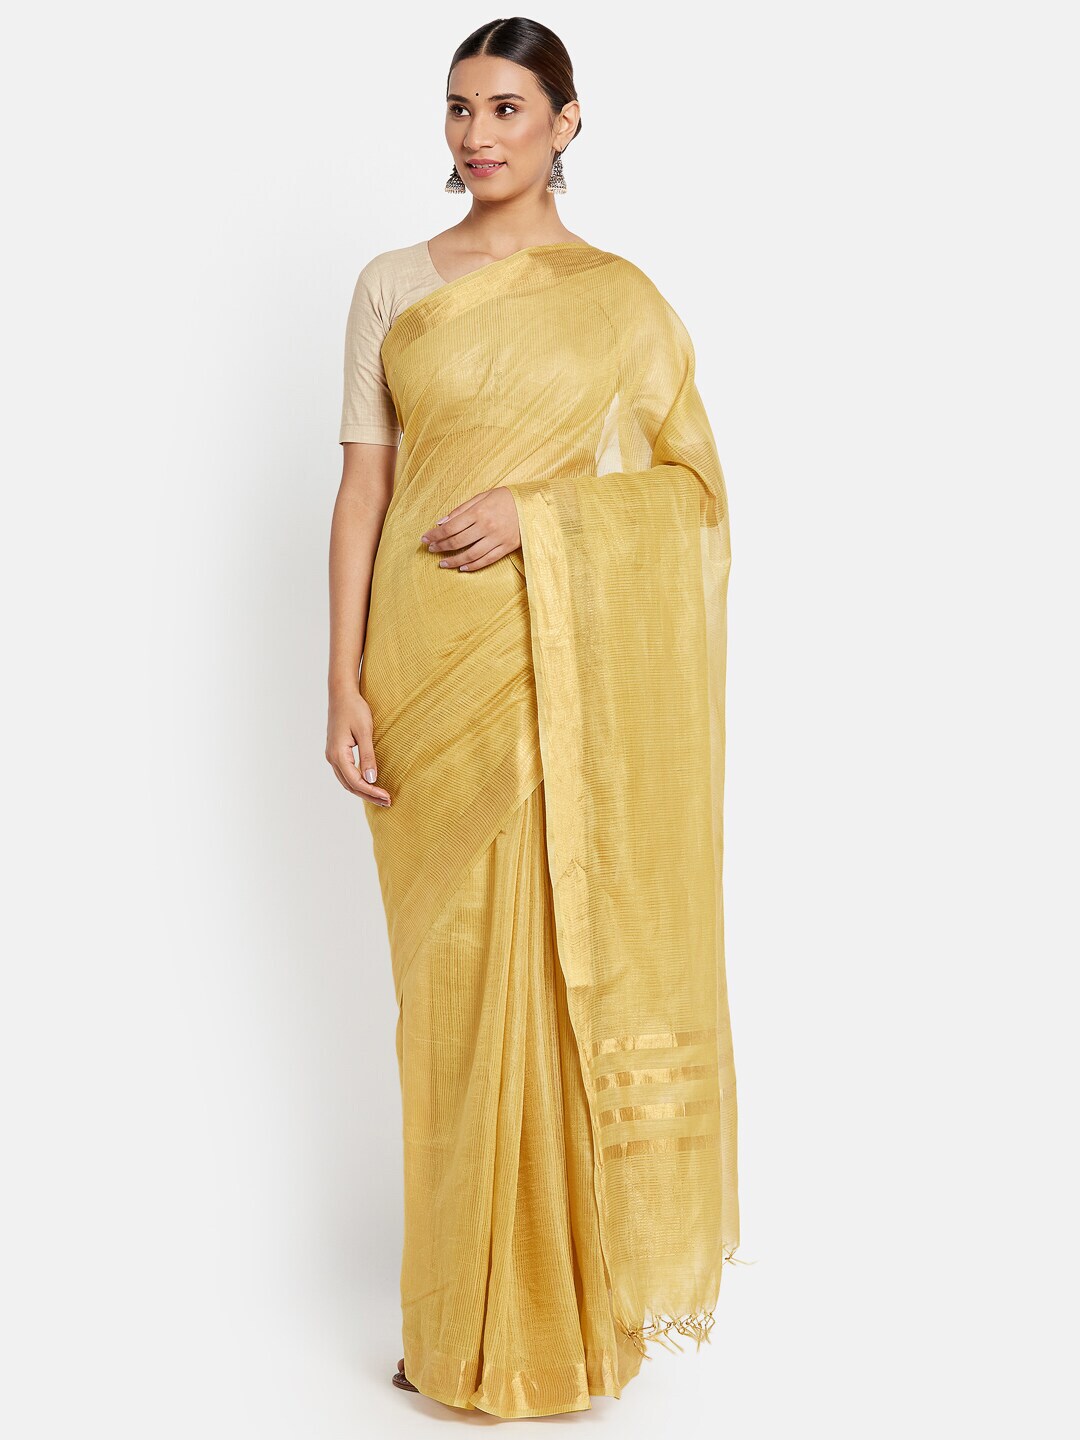 Fabindia Yellow & Gold-Toned Striped Zari Pure Silk Saree Price in India